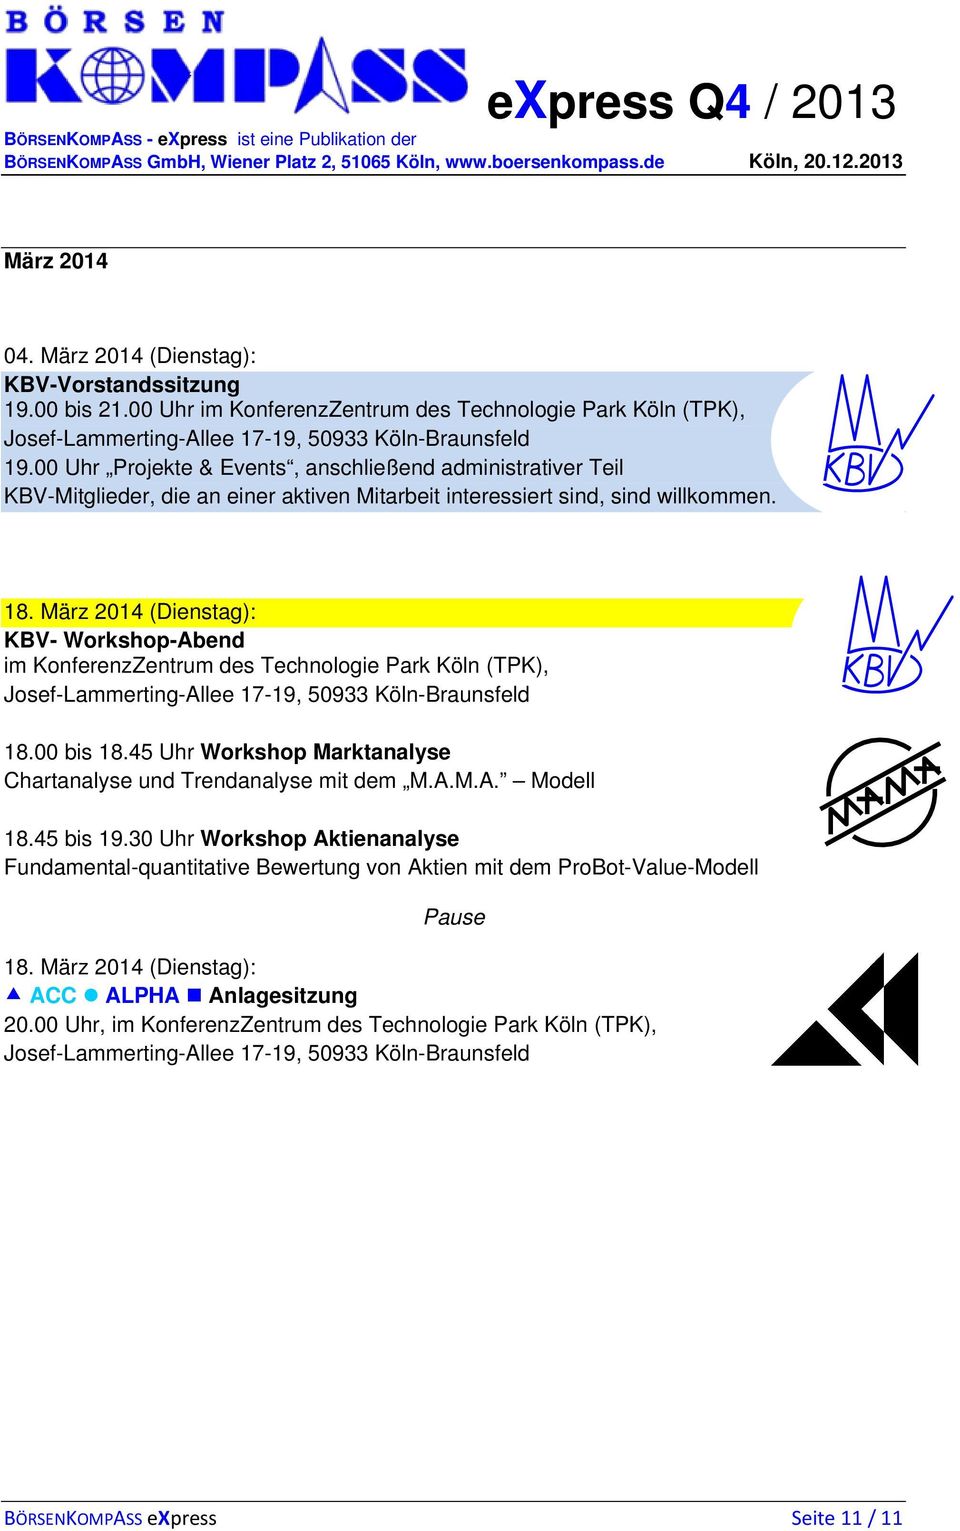 März 2014 (Dienstag): KBV- Workshop-Abend im KonferenzZentrum des Technologie Park Köln (TPK), 18.00 bis 18.45 Uhr Workshop Marktanalyse Chartanalyse und Trendanalyse mit dem M.A.M.A. Modell 18.